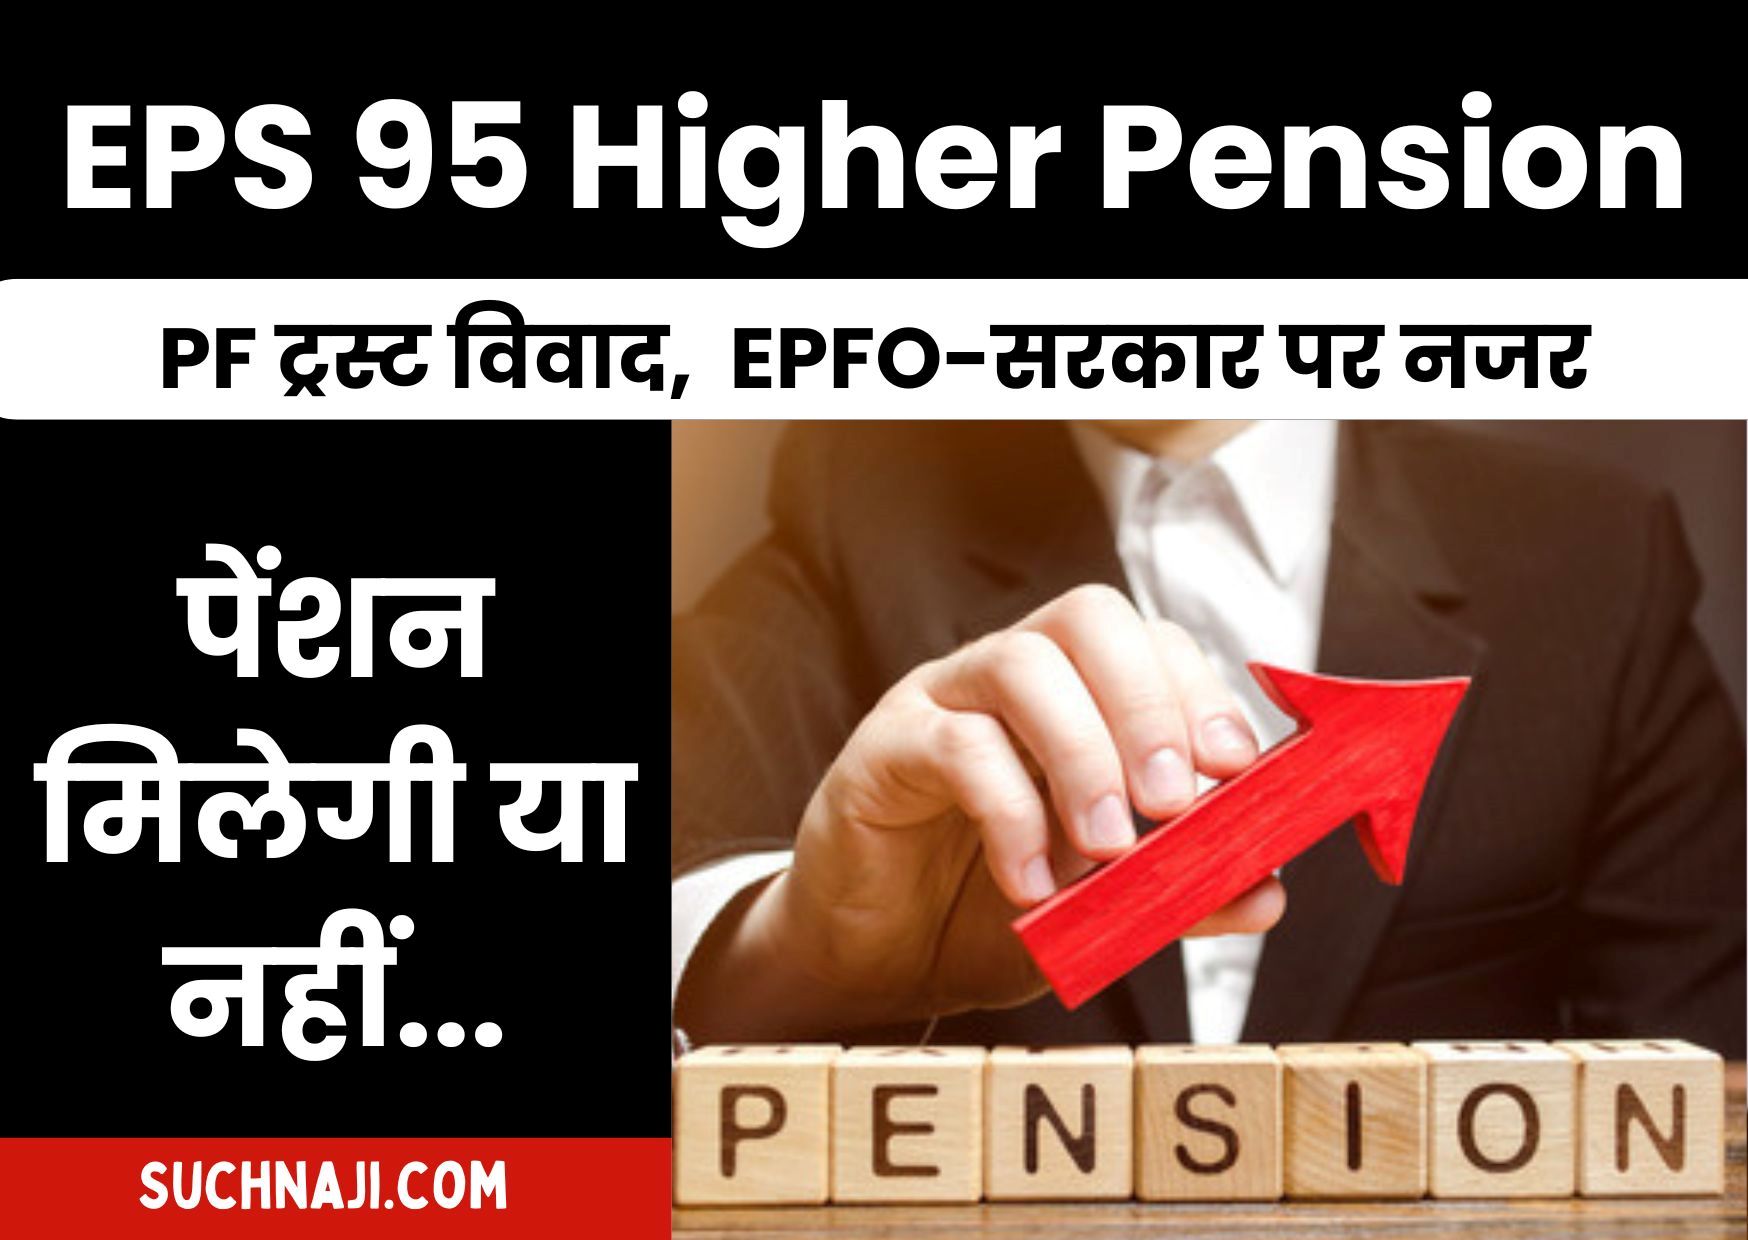 EPS 95 Higher Pension: PF ट्रस्ट विवाद होगा हल या सरकार देगी EPFO का साथ